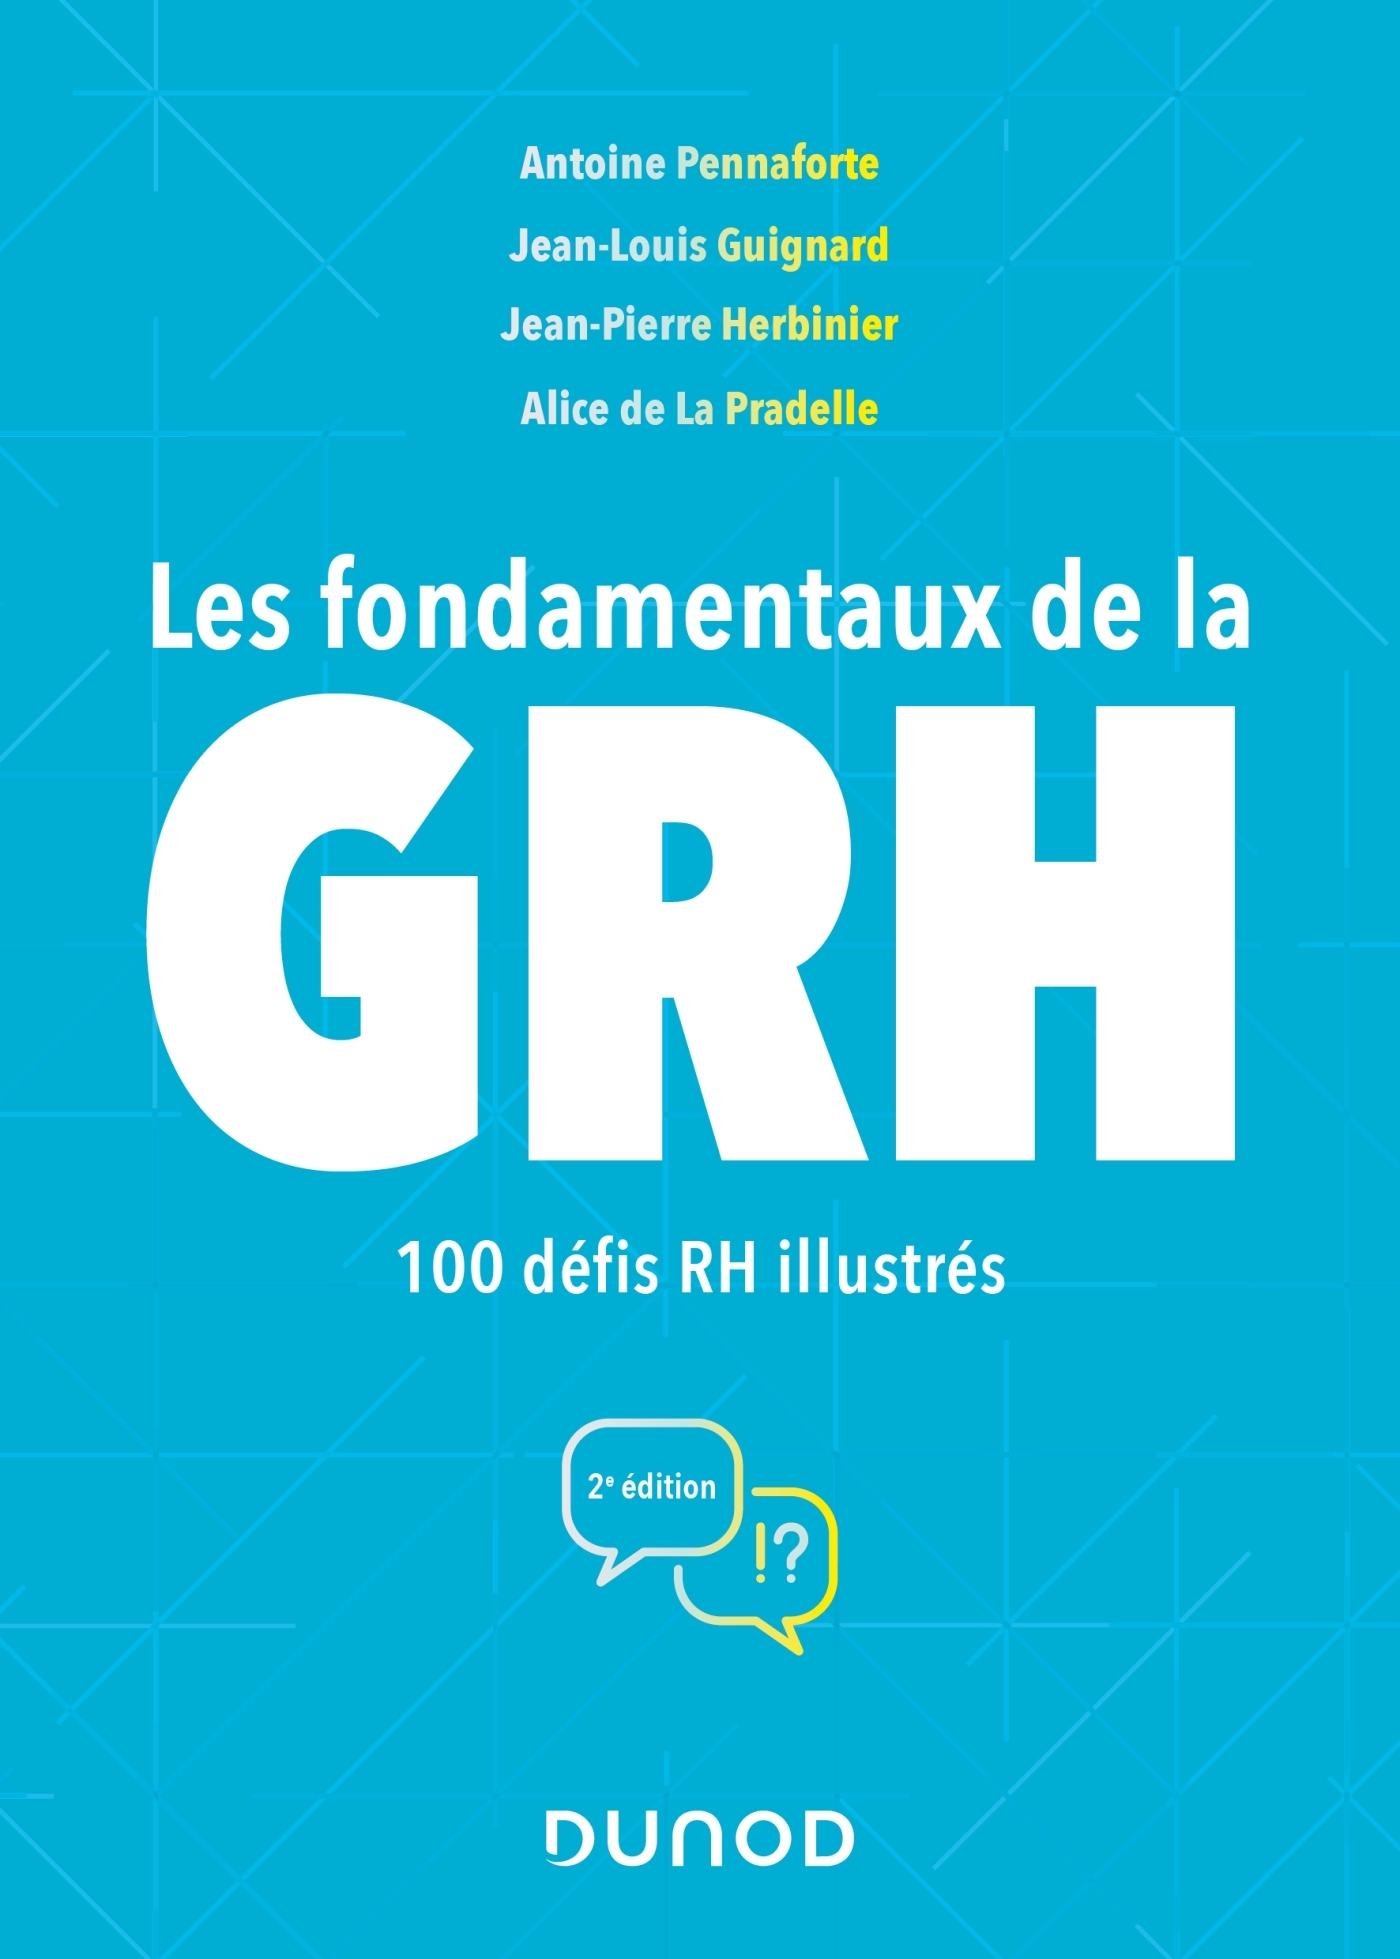 Les Mots De La Grh : Exploration Les fondamentaux de la GRH - 100 défis RH illustrés - Livre et ebook  Ressources humaines de Antoine Pennaforte - Dunod